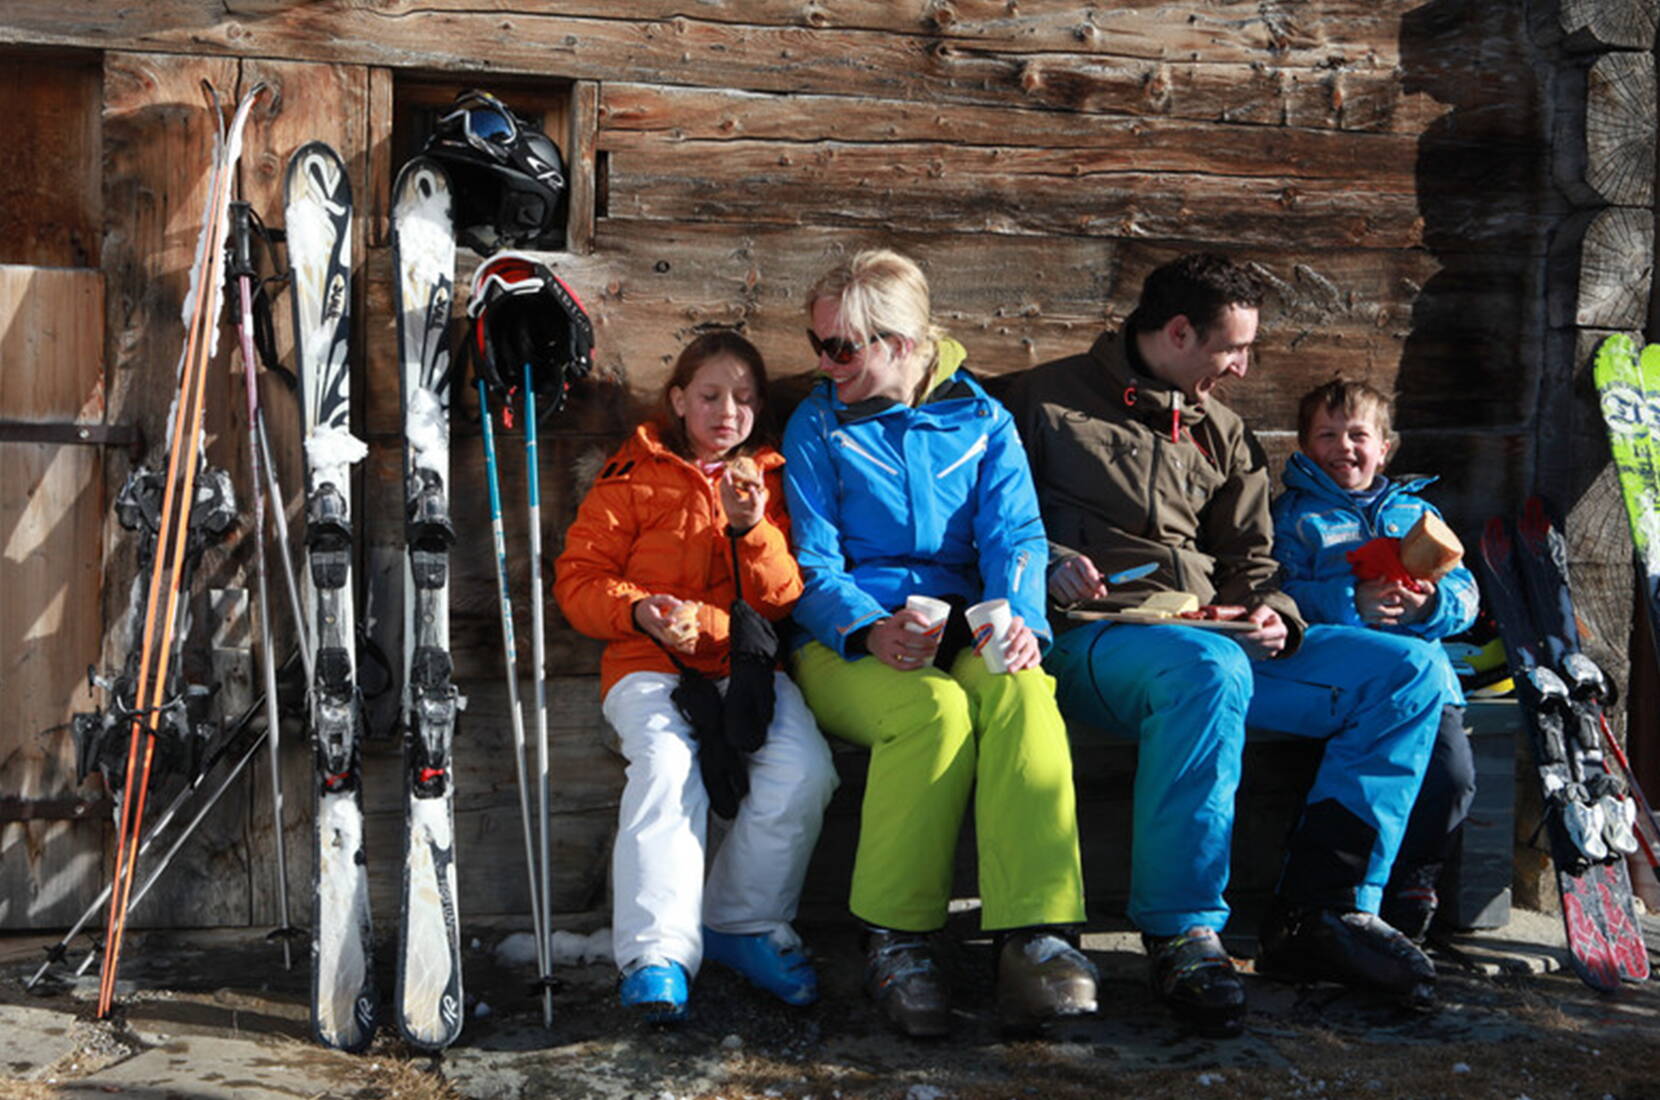 Gita in famiglia a Savognin. Con molta neve naturale e piste rosse e blu molto larghe, questo comprensorio sciistico soleggiato offre un divertimento speciale: non per niente le piste di Savognin sono tra le più belle dell'intero arco alpino.